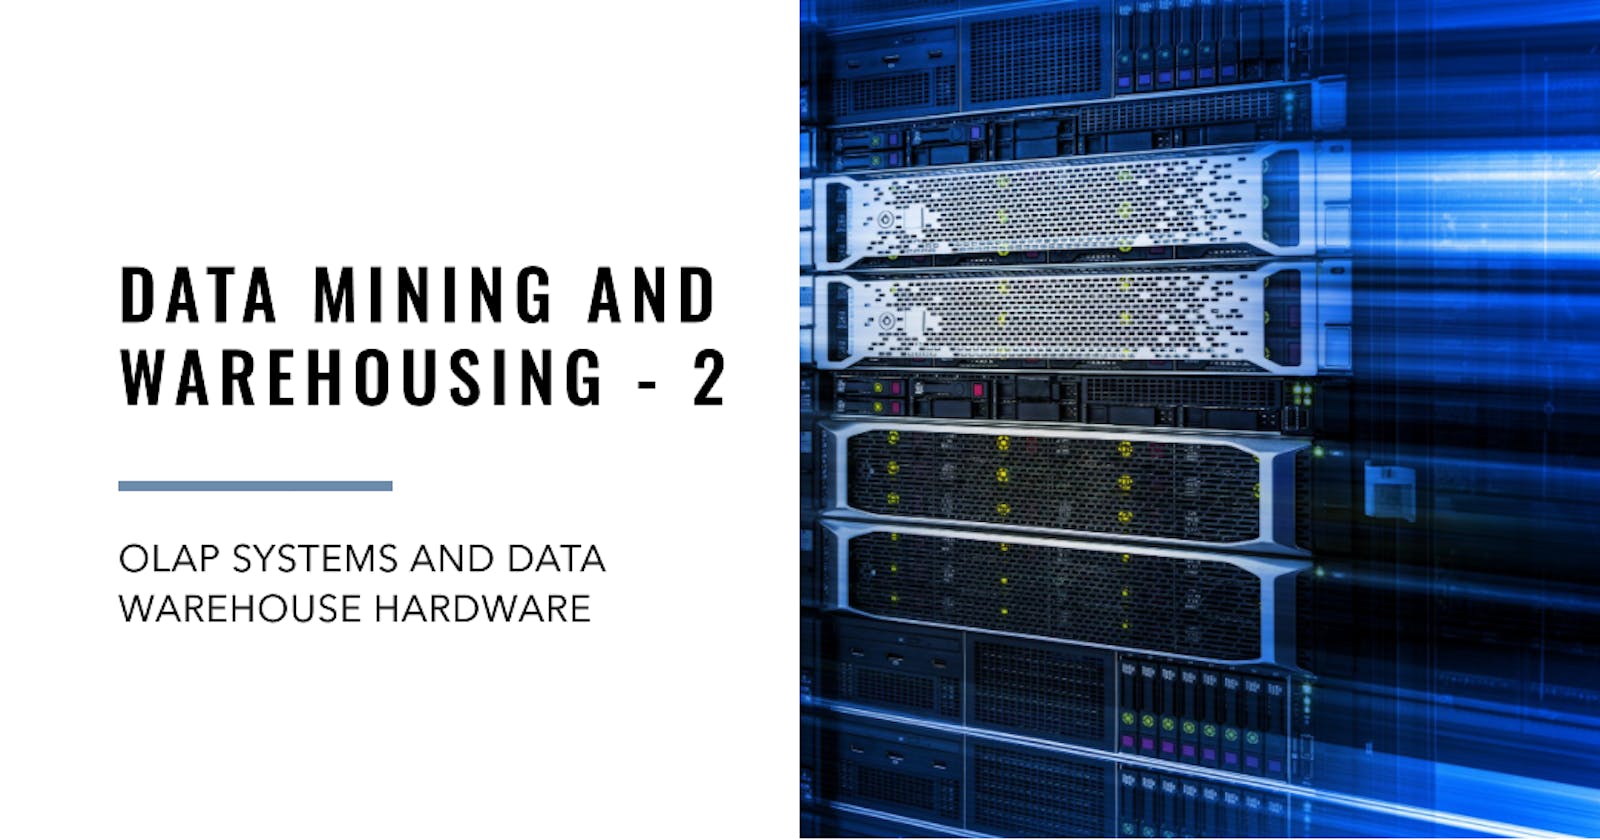 Data Mining and Warehousing - 2